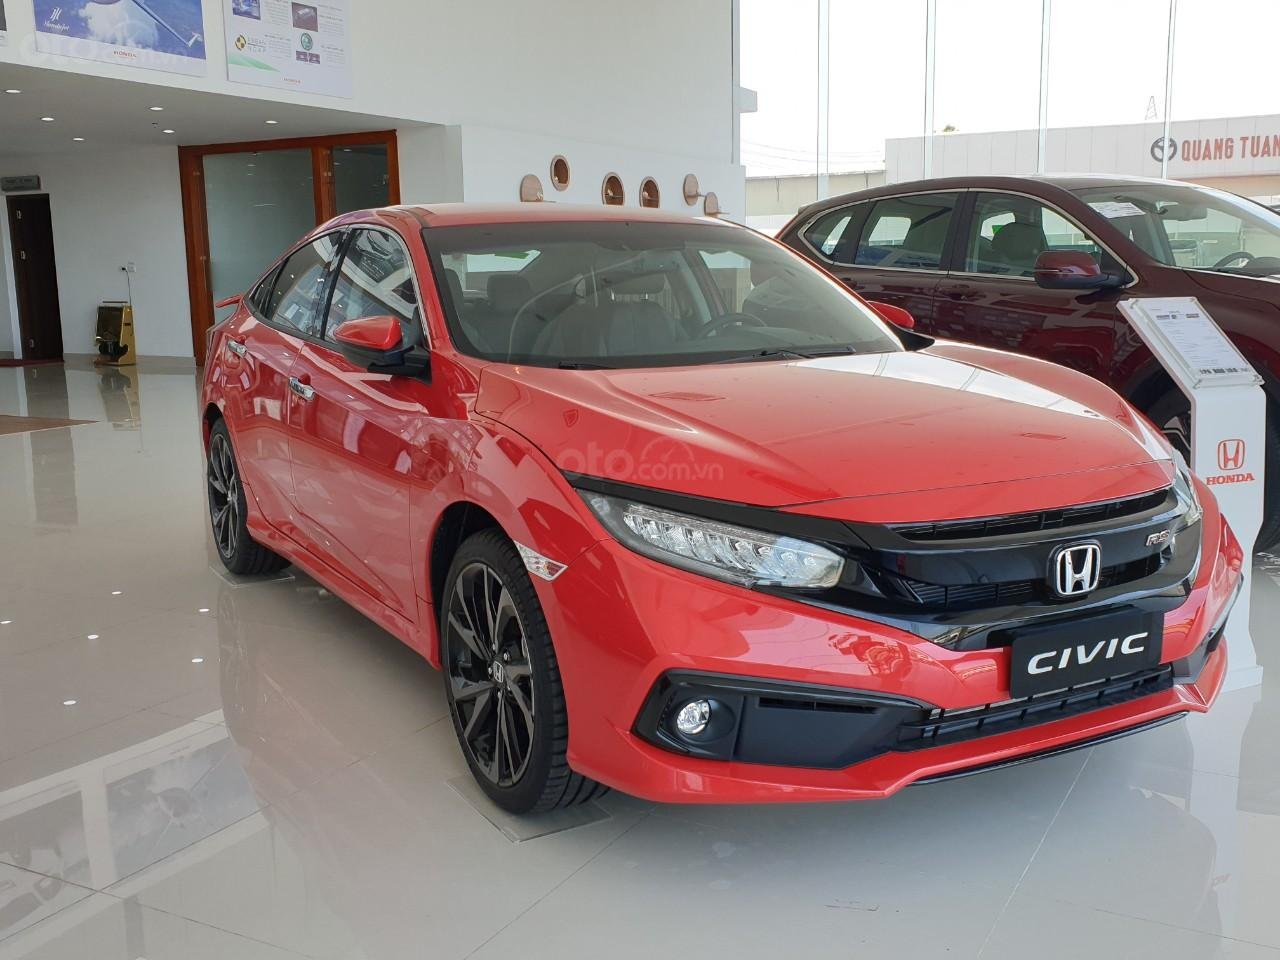 Honda Civic 2020 là phiên bản mới nâng cấp 1